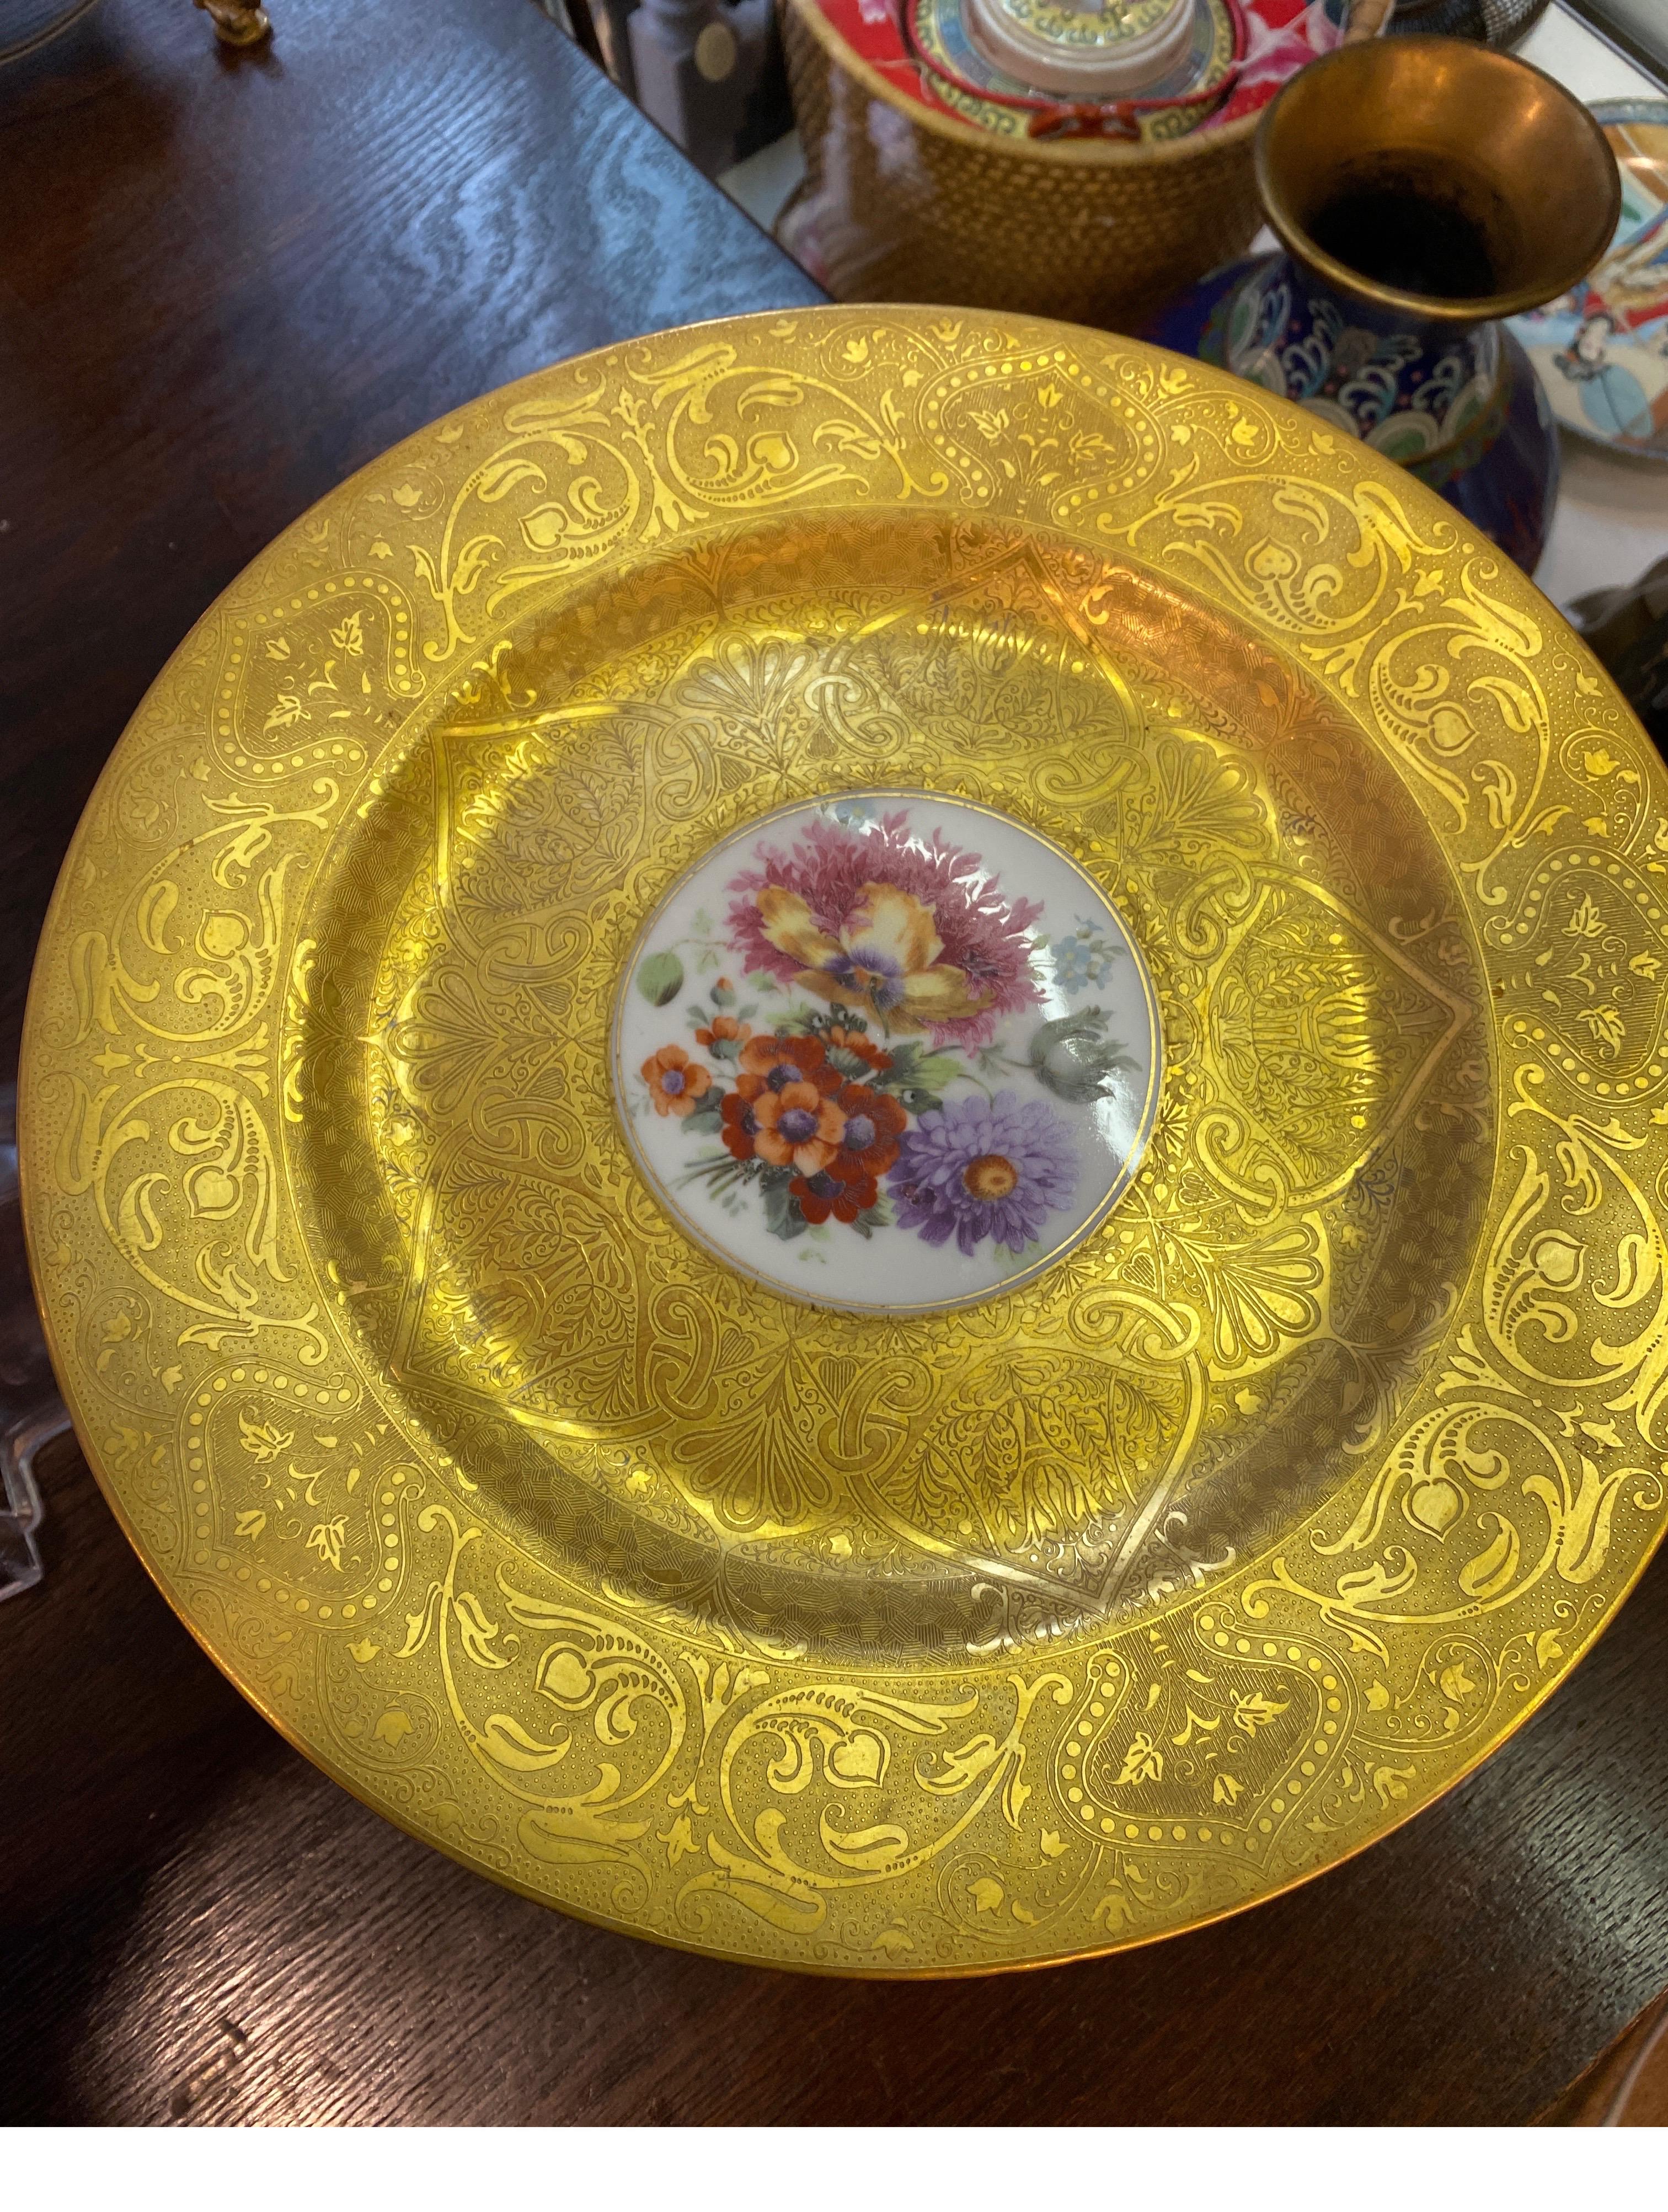 Un ensemble de 12 assiettes de service lourdes incrustées d'or par Hutchenreuther, Allemagne, vers les années 1920, mesurant 10,5 de diamètre ; les assiettes ont un motif en creux avec de larges bordures dorées et des bouquets de fleurs de Dresde au